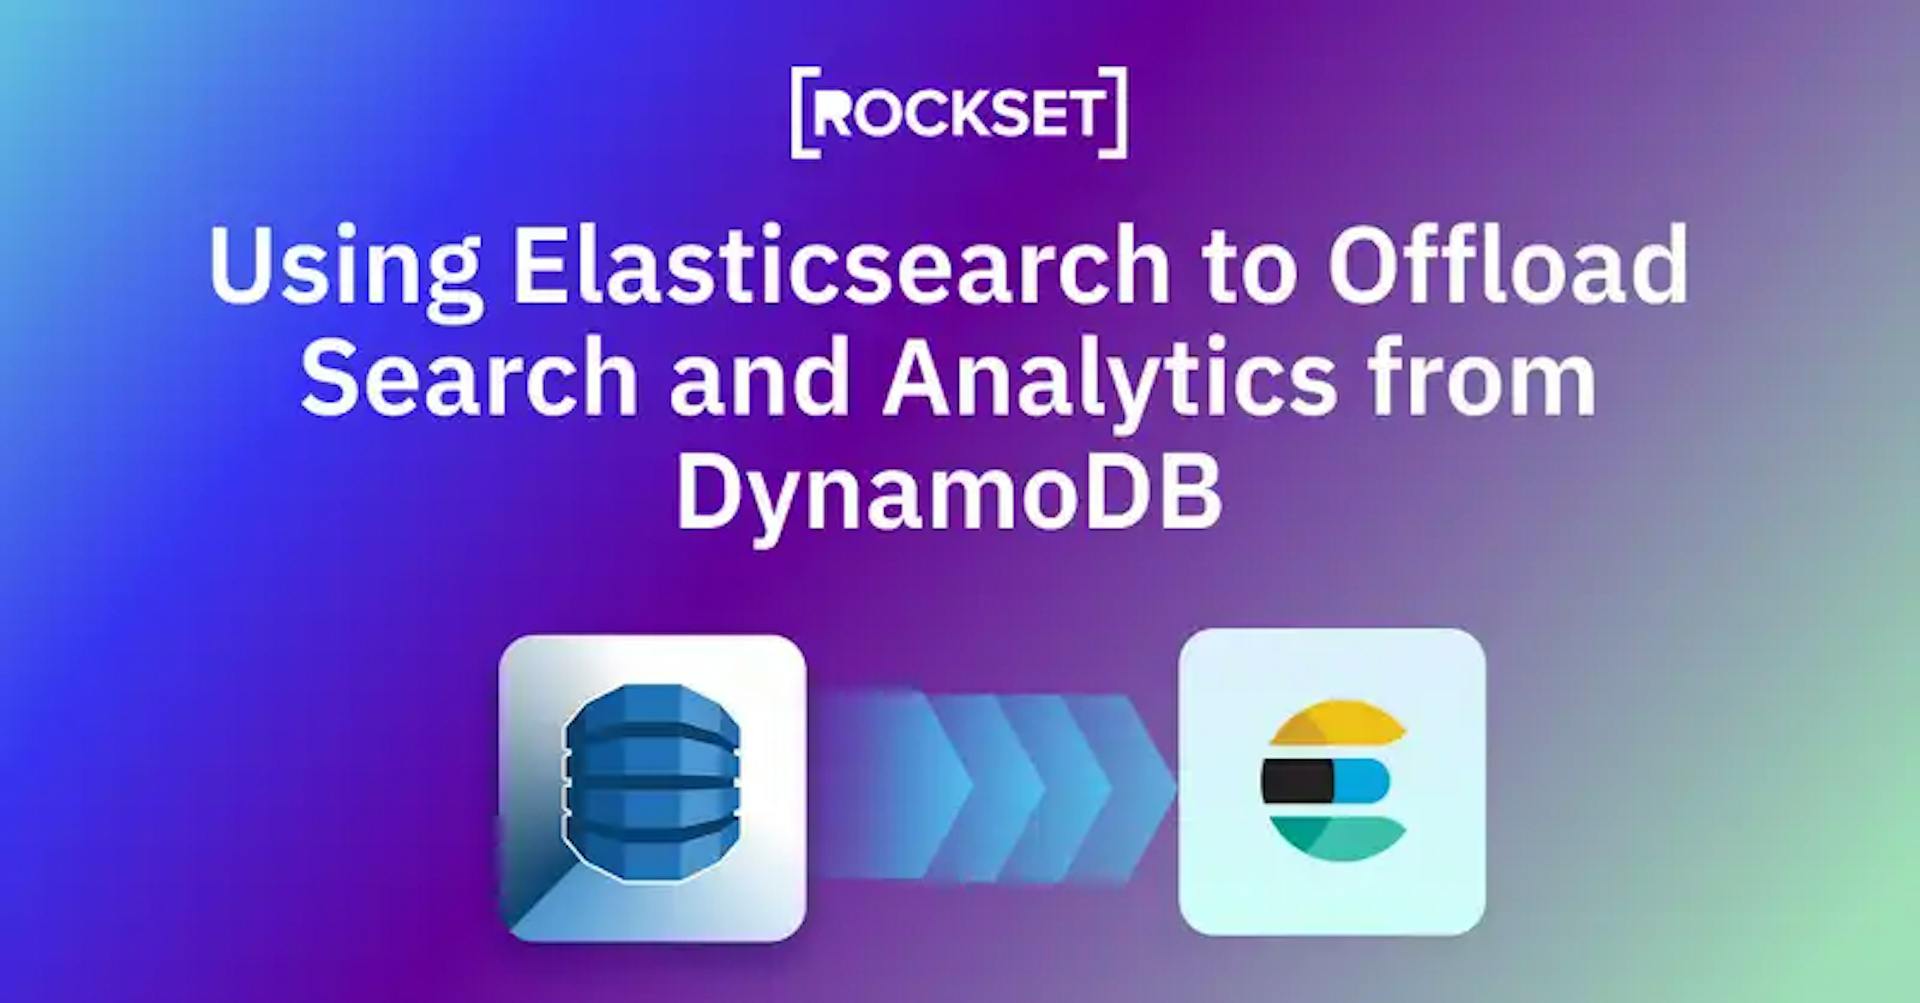 featured image - Uso de Elasticsearch para descargar búsquedas y análisis de DynamoDB: ventajas y desventajas